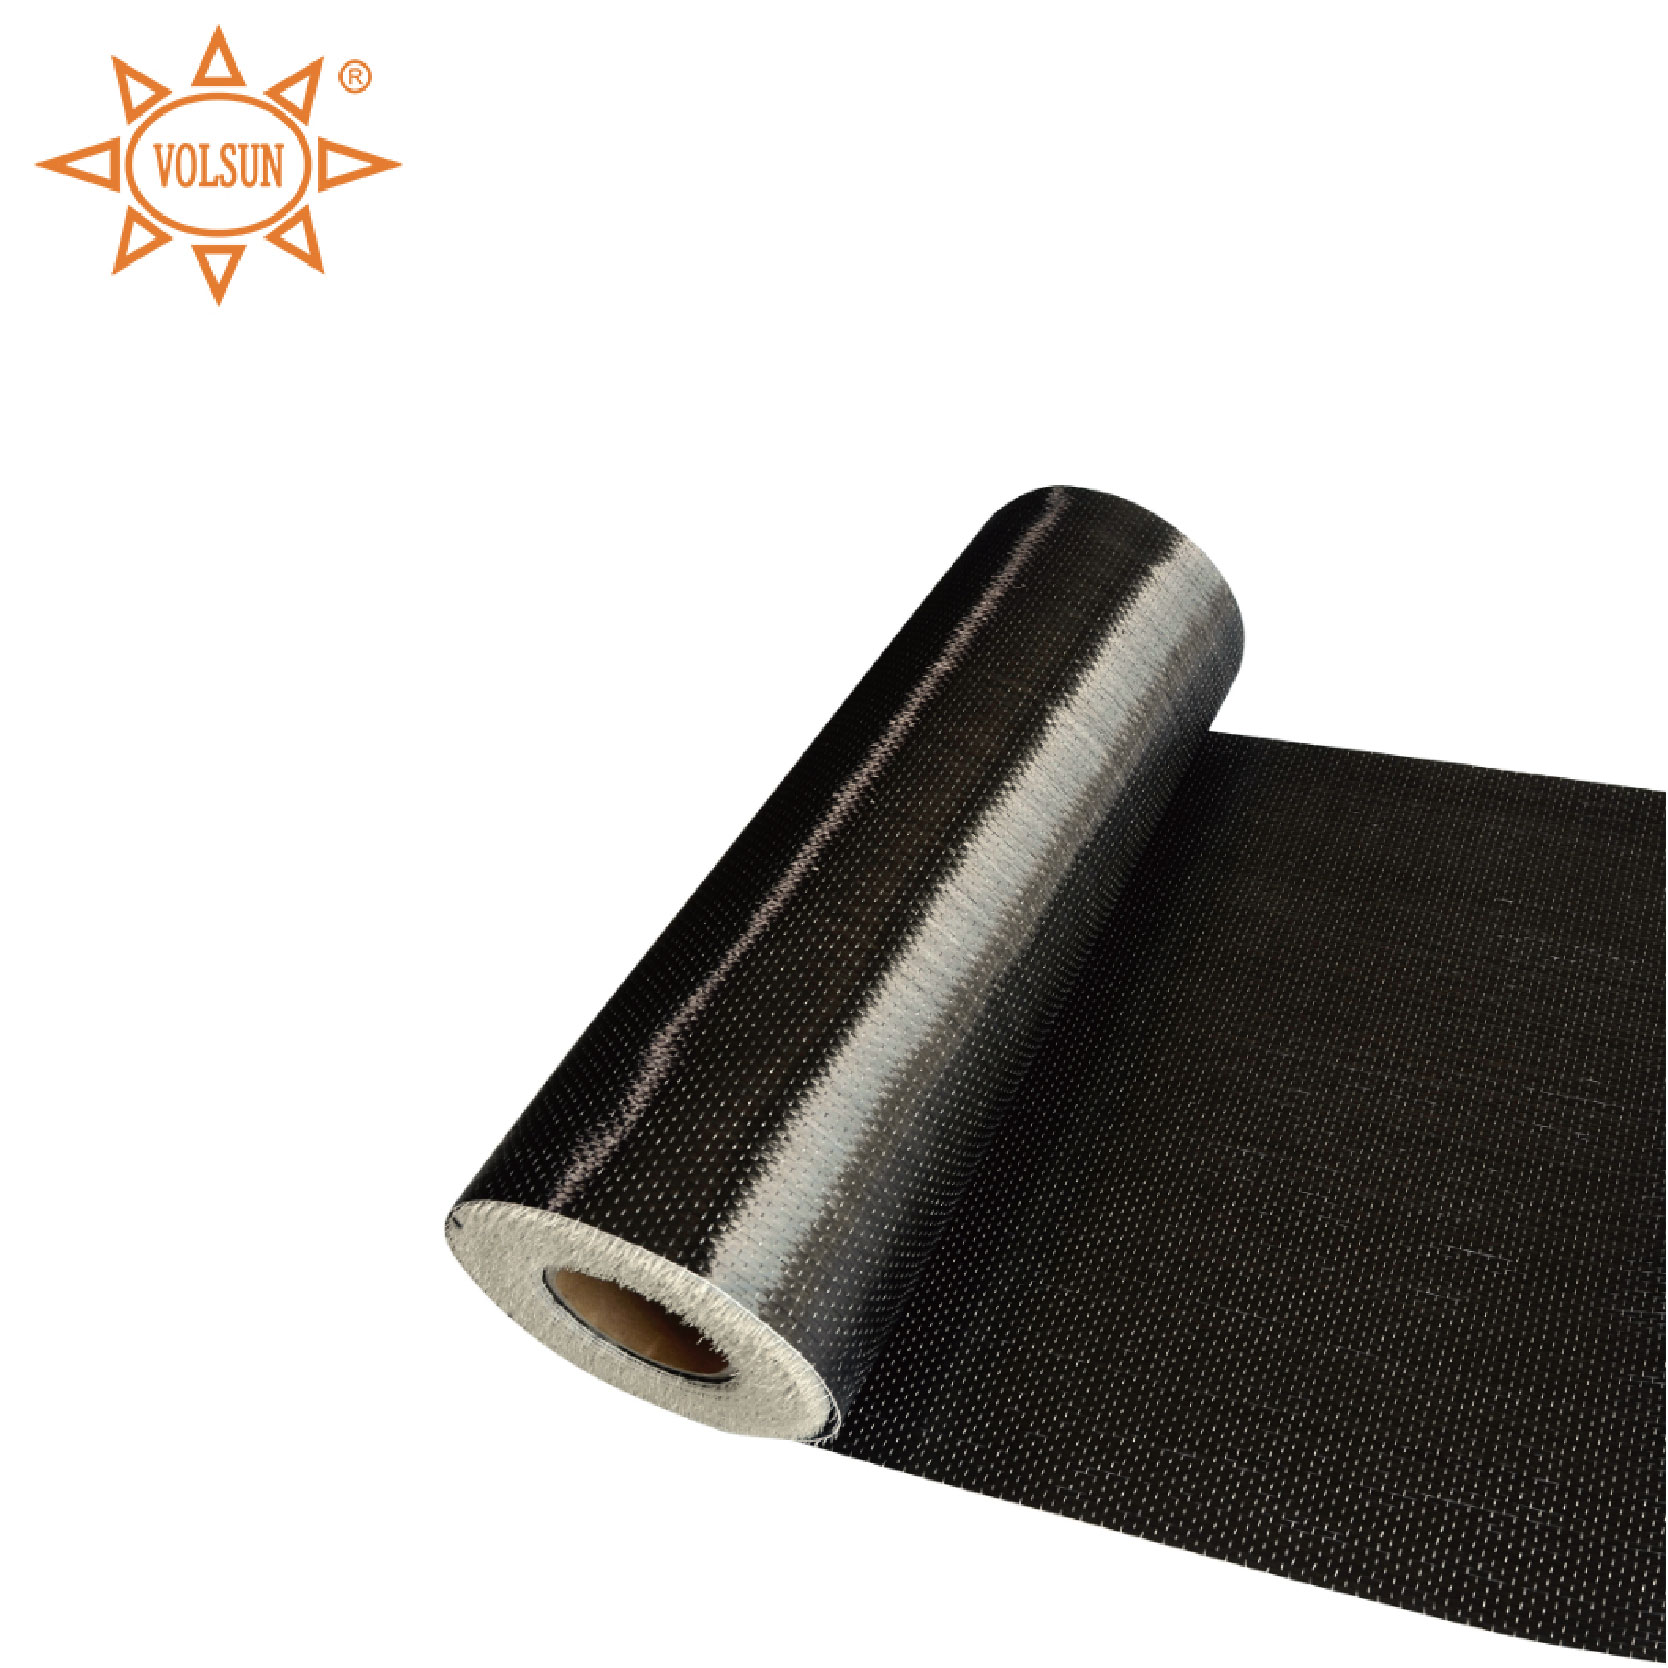 carbon fiber cloth (16).jpg